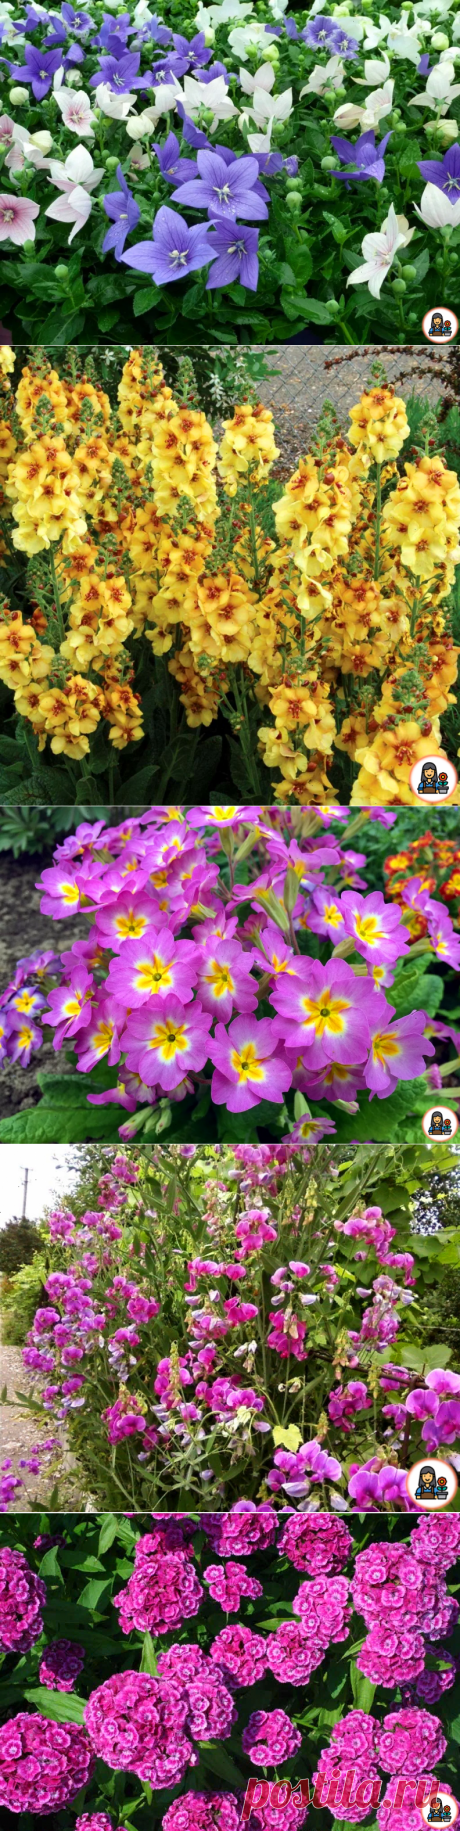 6 неприхотливых многолетников, которые нужно посадить в июне, чтобы наслаждаться роскошным цветением. Рассказываю о каждом +фото | Цветущий сад | Яндекс Дзен